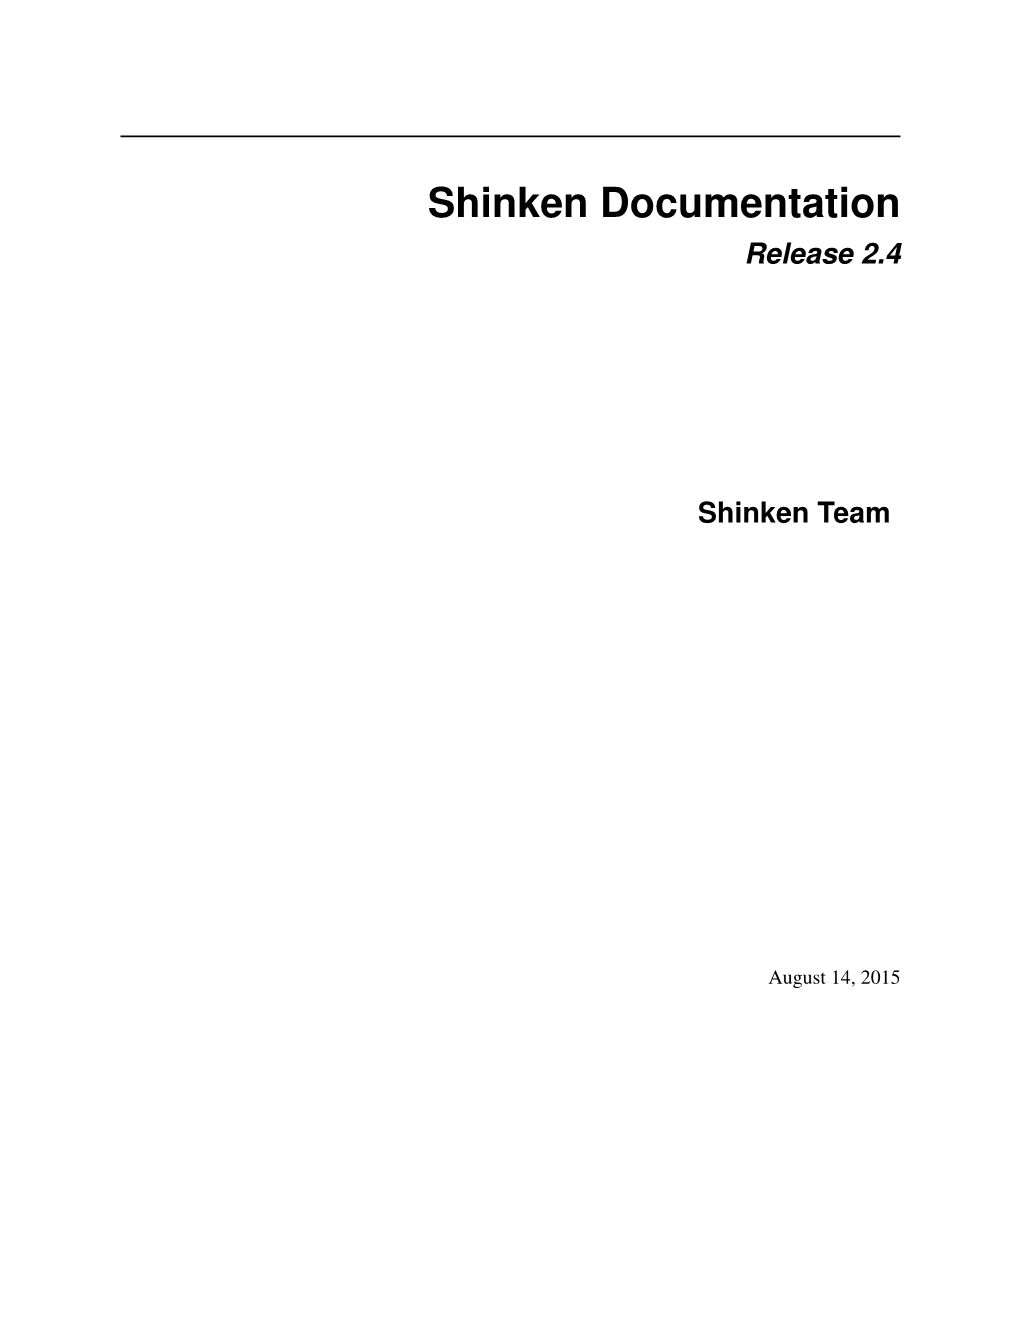 Shinken Documentation Release 2.4